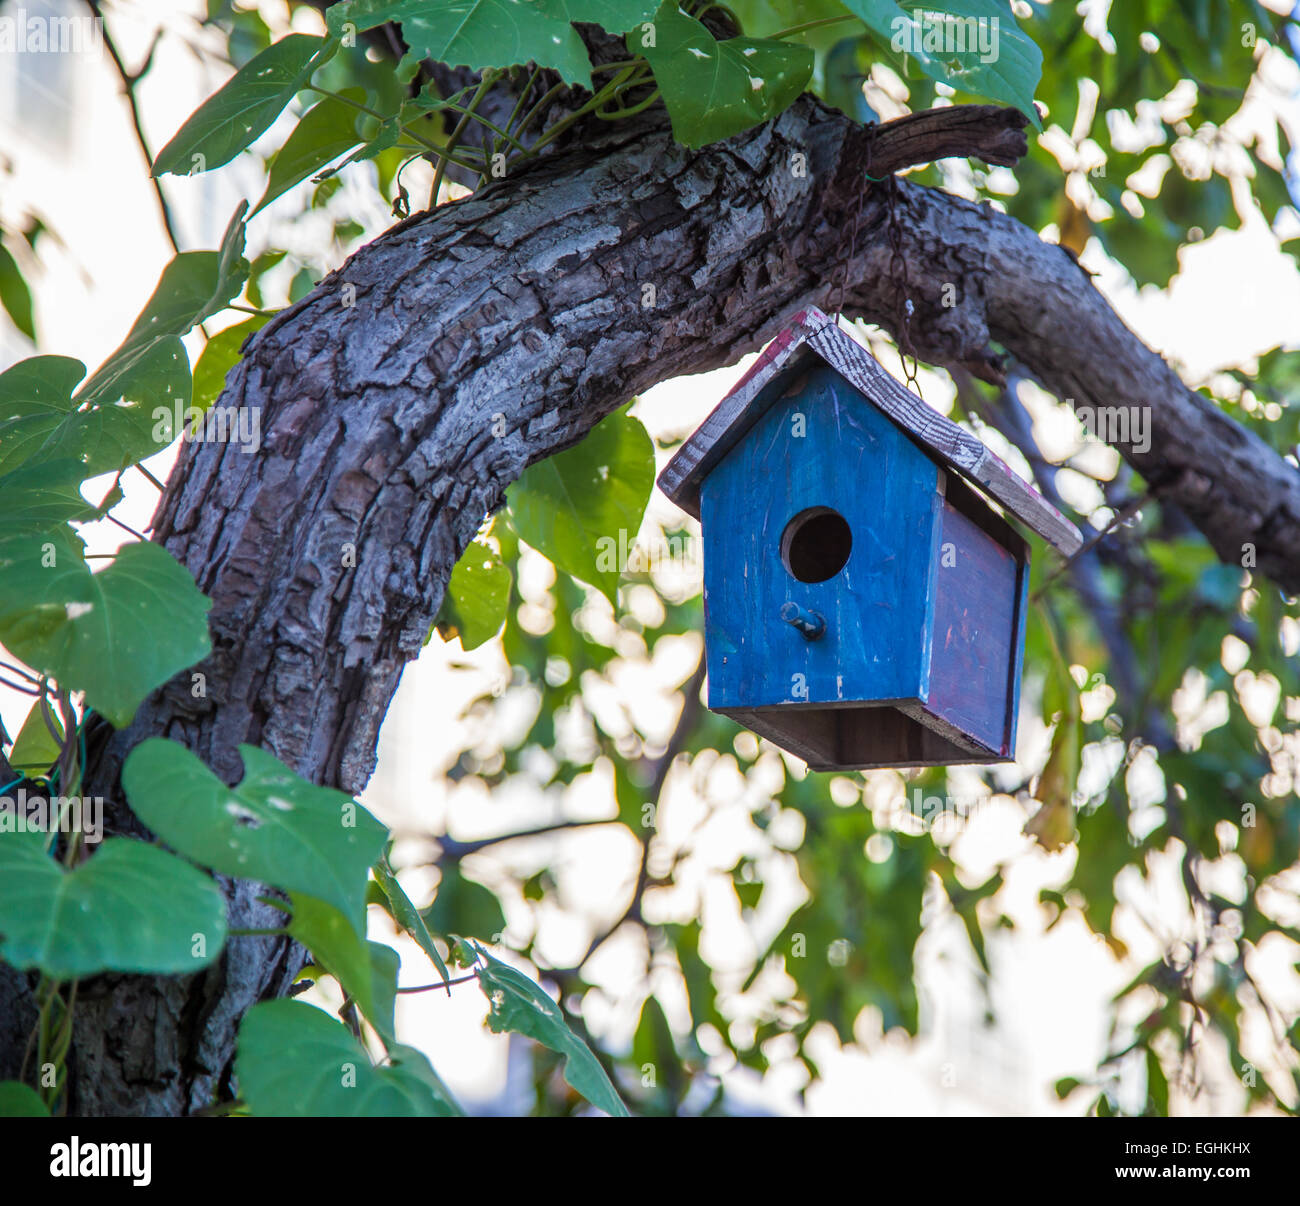 Casita para pájaros de calabaza seca azul con pájaro en un árbol en flor -  Patio del amanecer